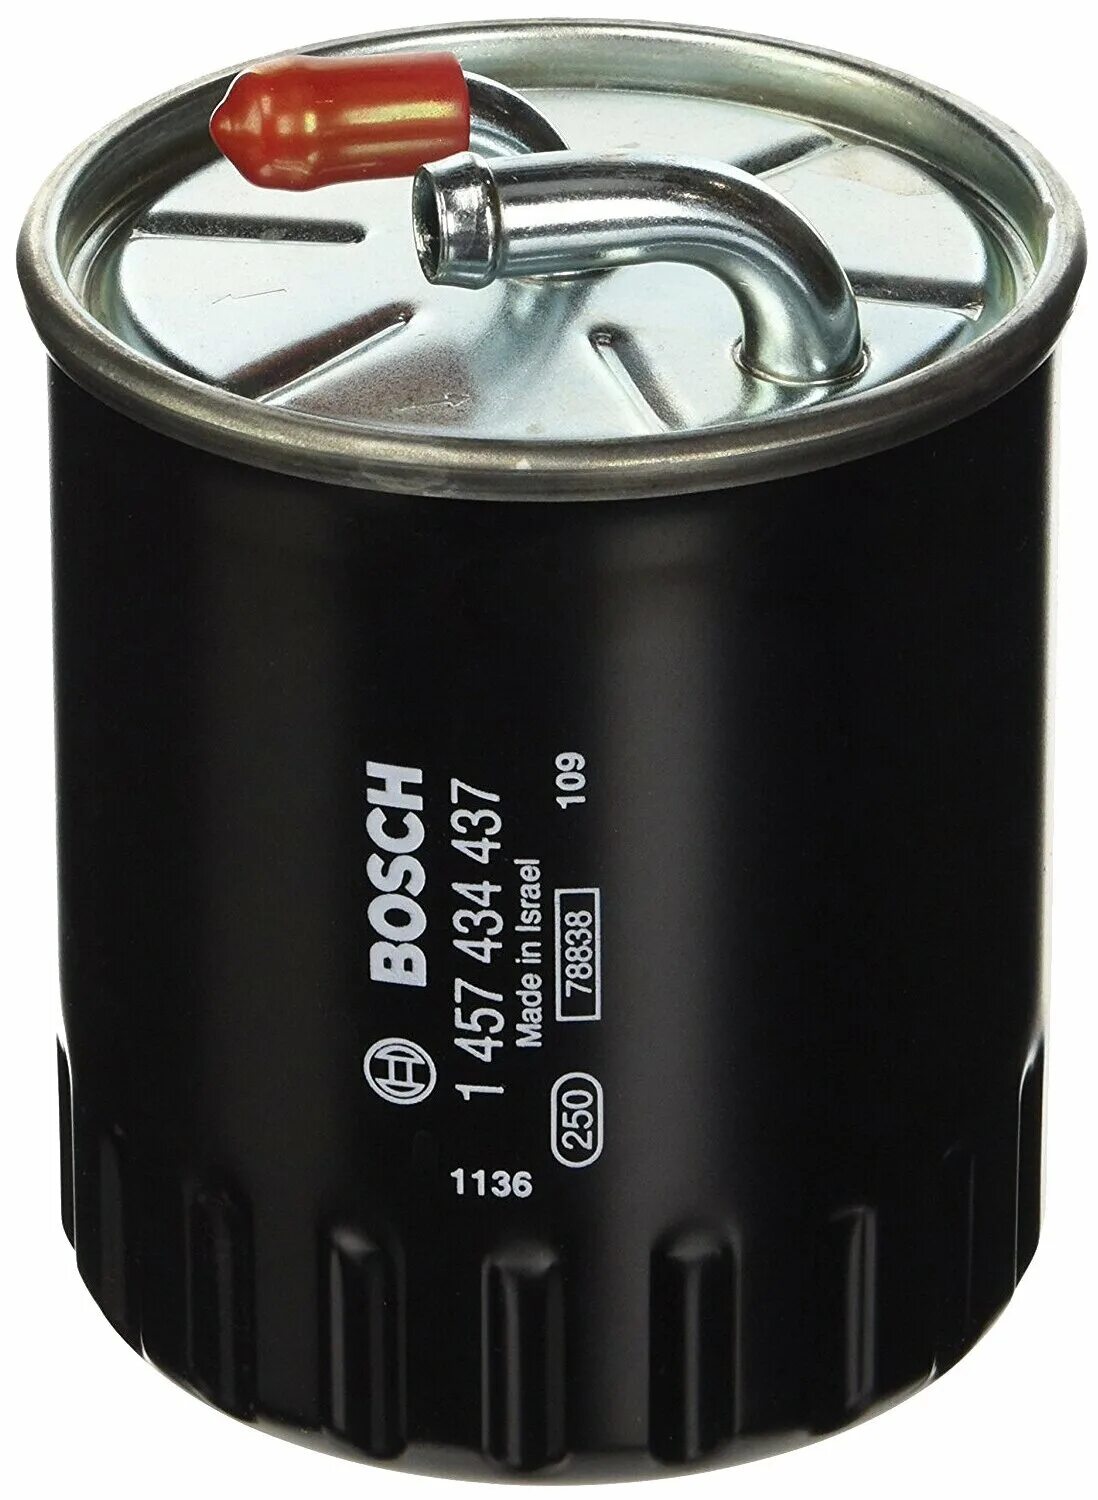 Топливный фильтр дизель отзывы. Топливный фильтр Bosch 1457434437. Топливный фильтр бош 4437. 1457434437 Bosch дизель фильтр. 1 457 434 437 Bosch.